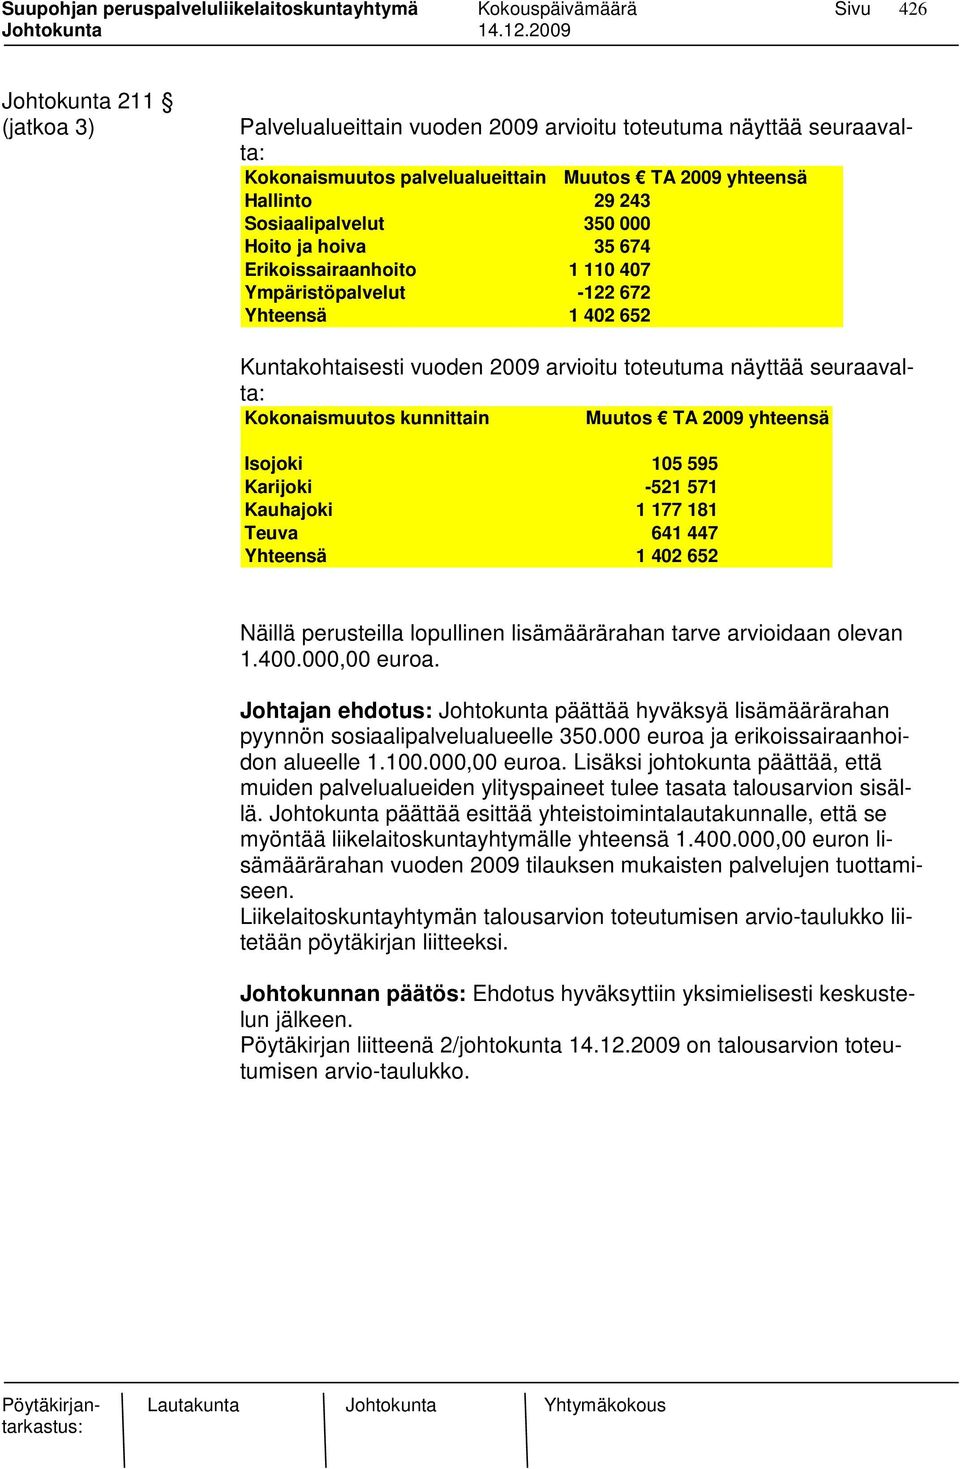 Muutos TA 2009 yhteensä Isojoki 105 595 Karijoki -521 571 Kauhajoki 1 177 181 Teuva 641 447 Yhteensä 1 402 652 Näillä perusteilla lopullinen lisämäärärahan tarve arvioidaan olevan 1.400.000,00 euroa.